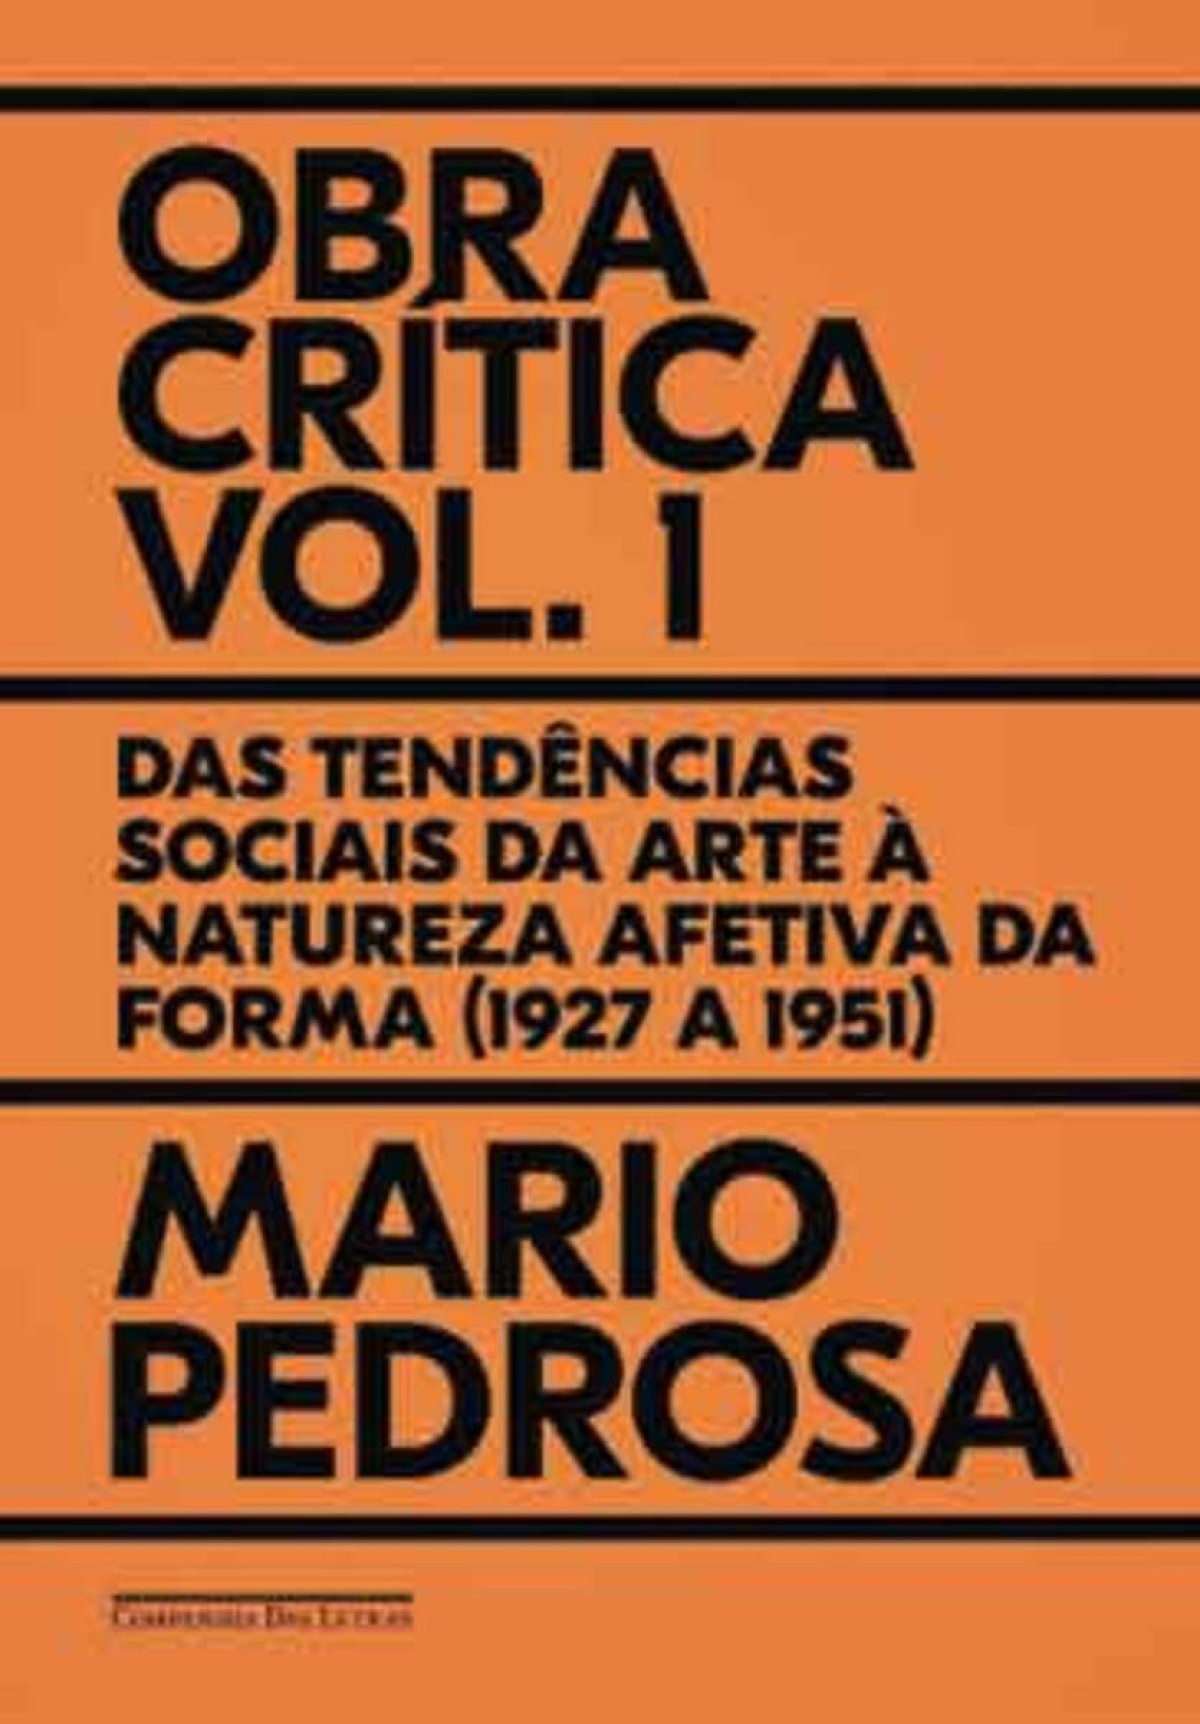 Capa do livro "Obra Crítica, Volume 1: Das tendências sociais da arte à natureza afetiva da forma  (1927 a 1951)"